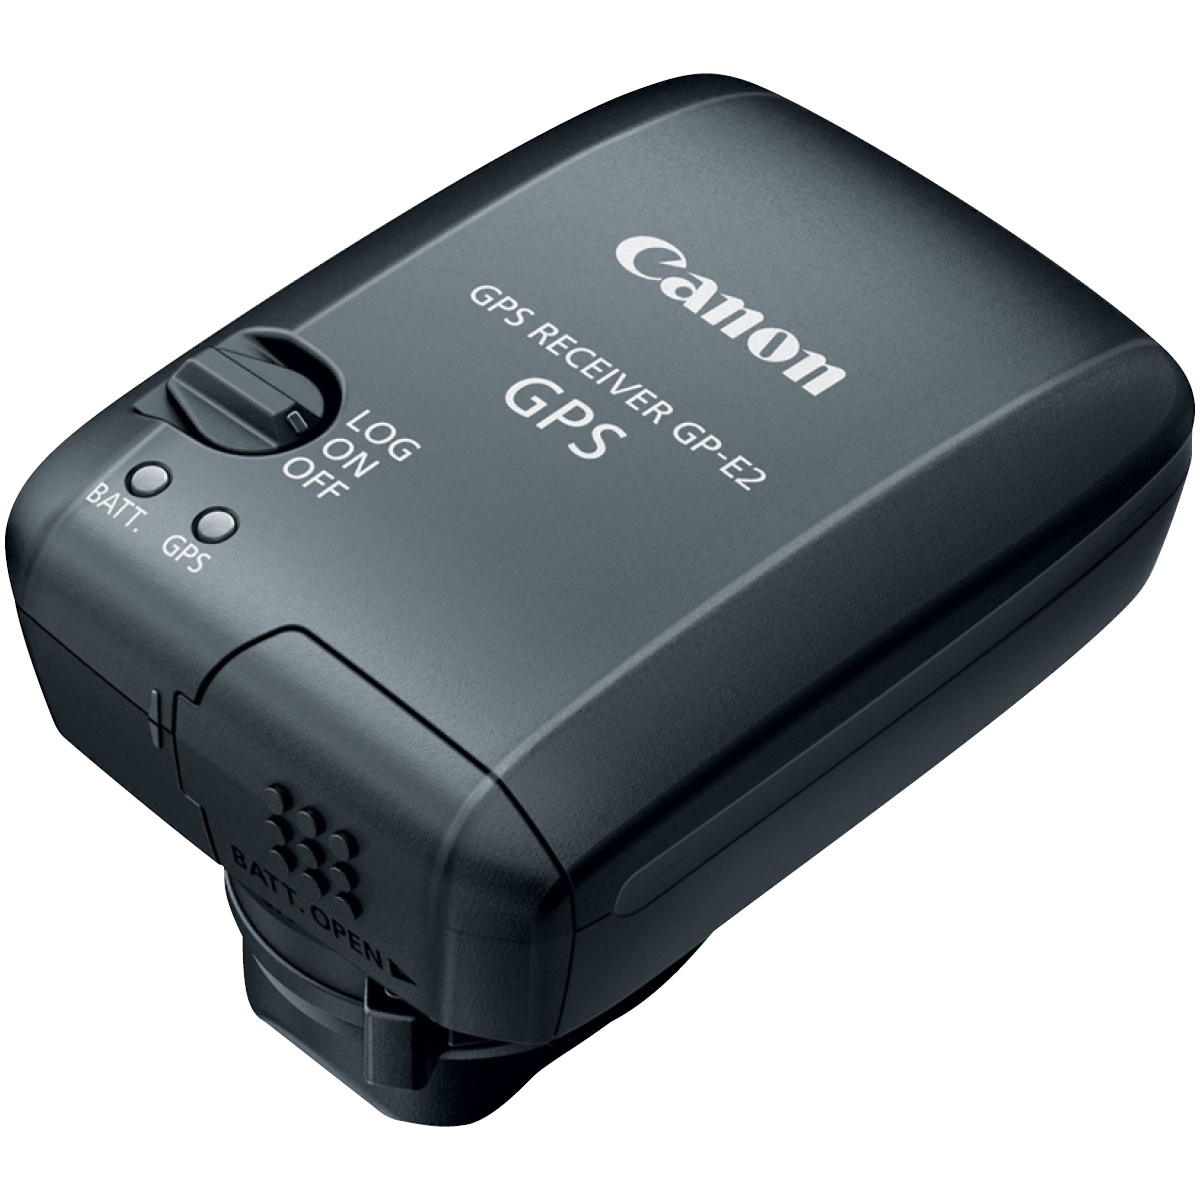 Canon GP-E2 GPS-Empfänger